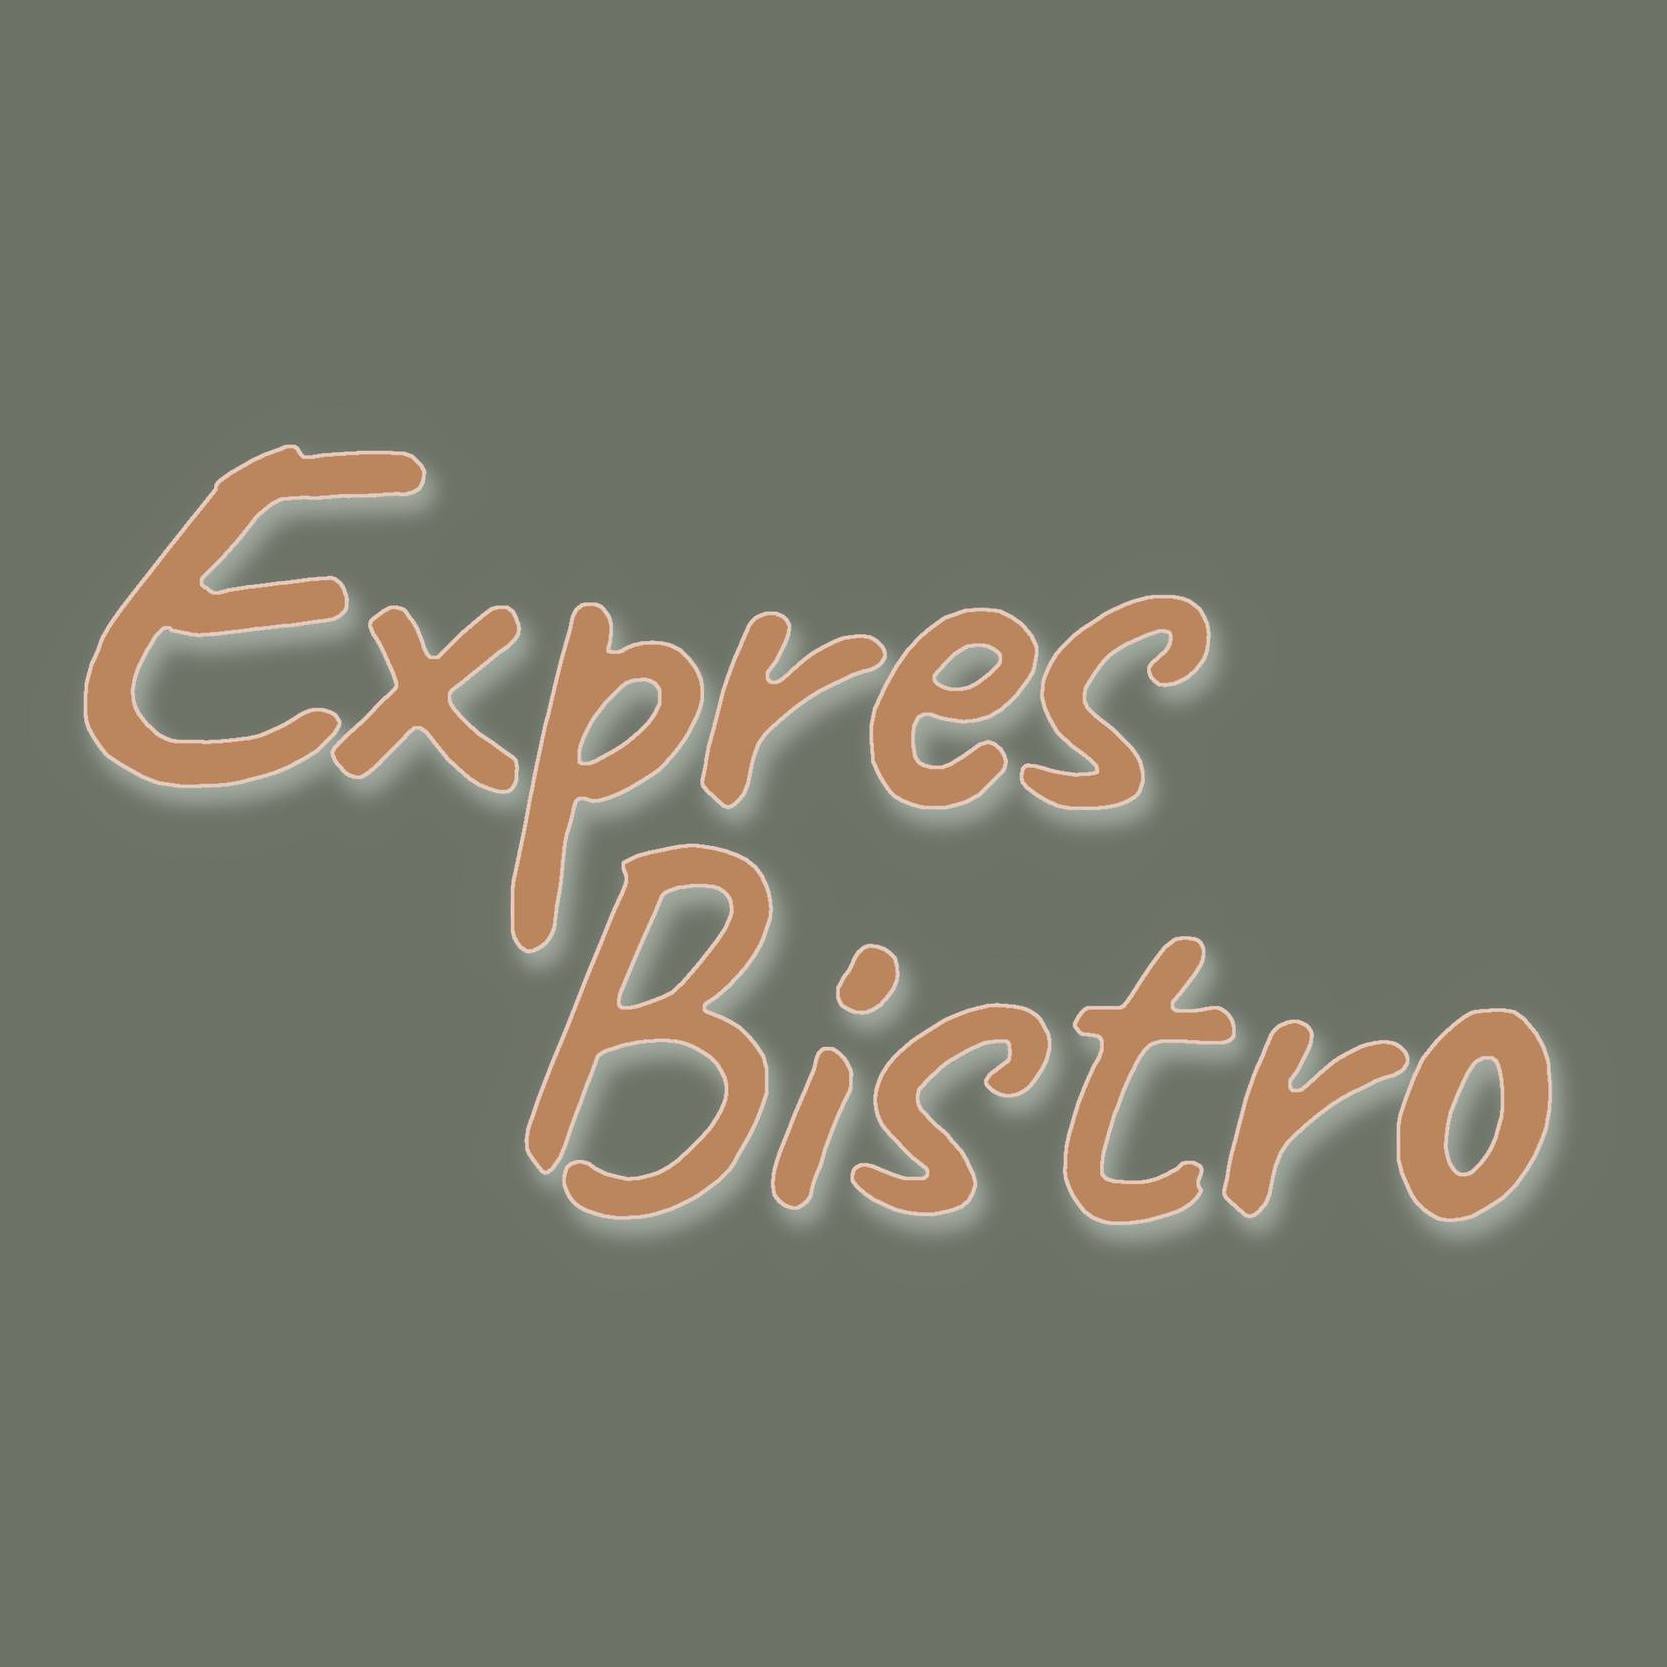 EXPRES BISTRO